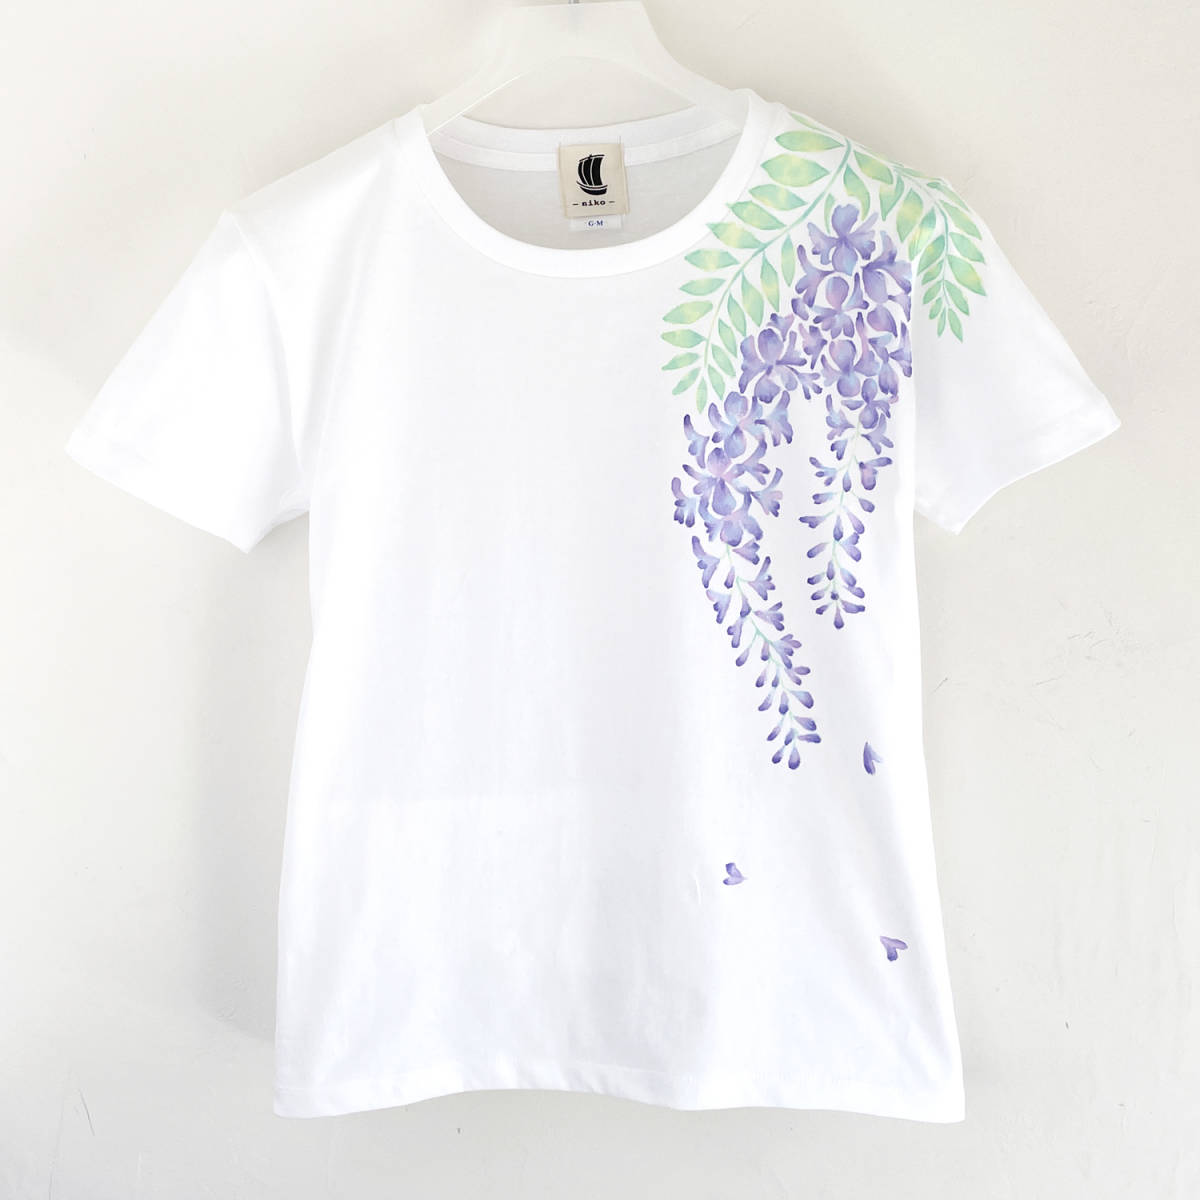 Camiseta de mujer, talla M, blanco, camiseta con estampado de flores de glicina, hecho a mano, camiseta pintada a mano, Talla mediana, Cuello redondo, Estampado